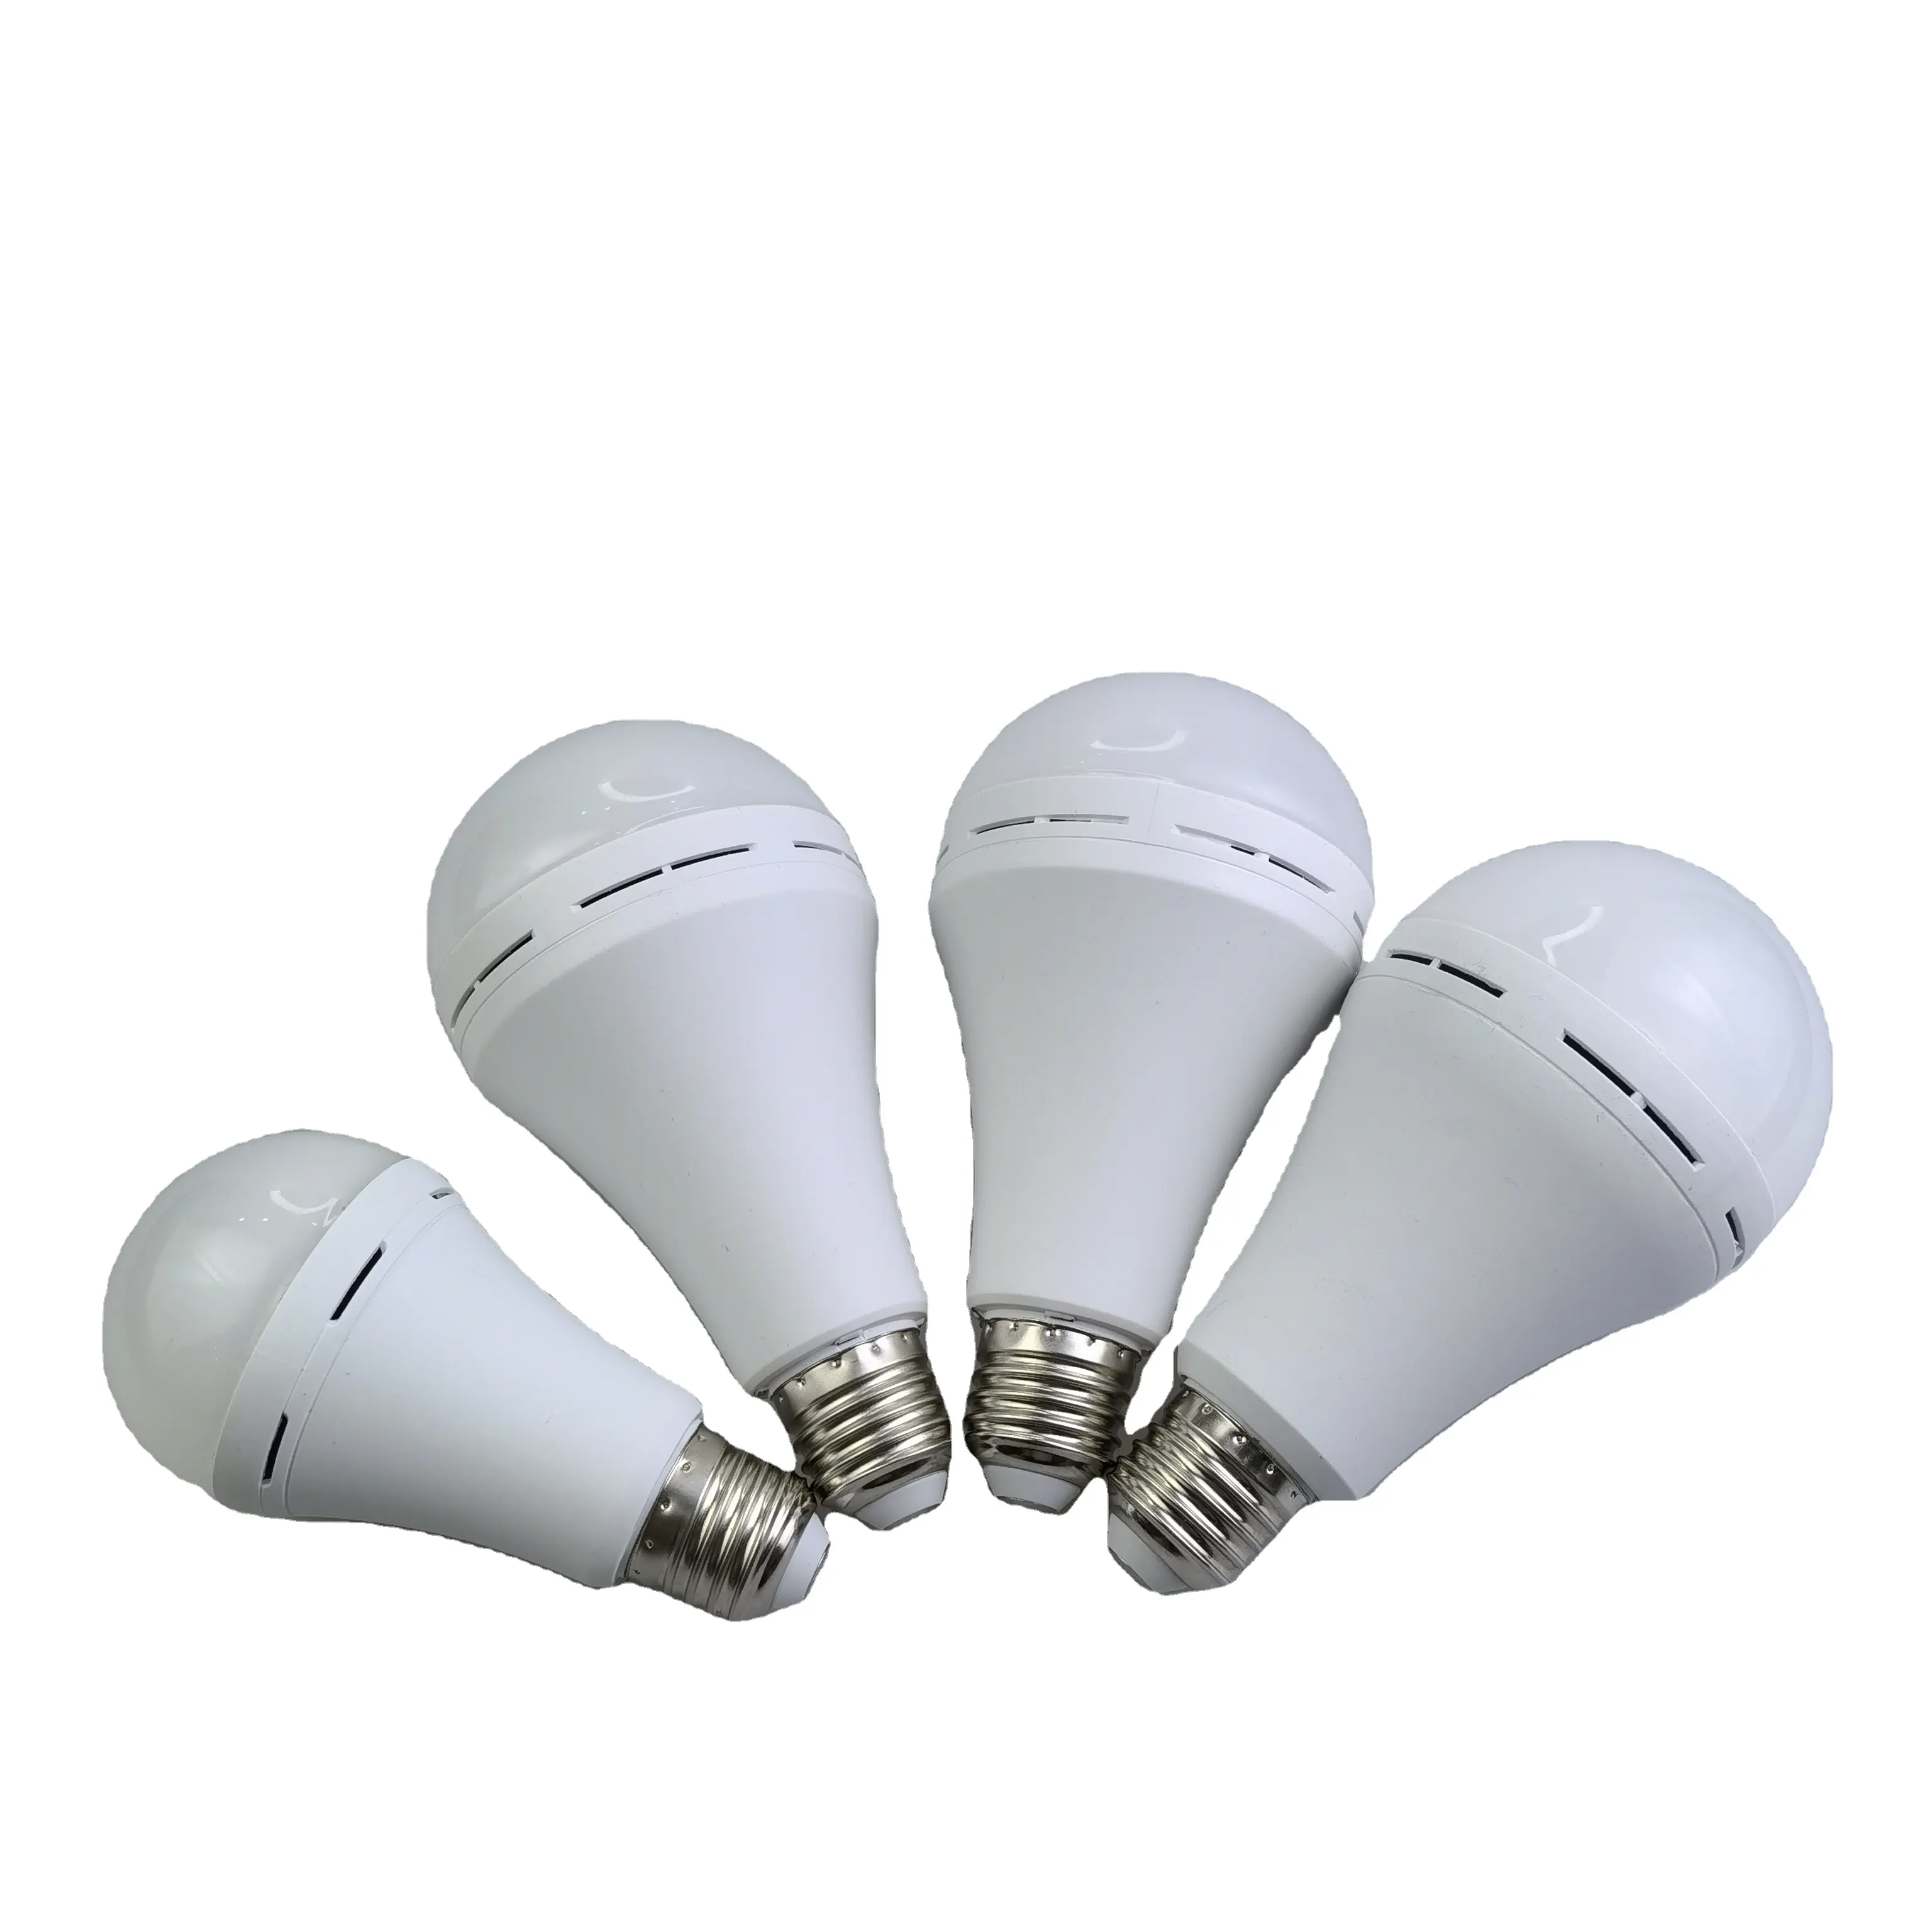 White Lithium E27 Intelliwhiteemergency Rechargea220vled Light/led Lamp/led Lig20wbulb Ac85-265v Automatic Charging 5w 7w 9w 12w